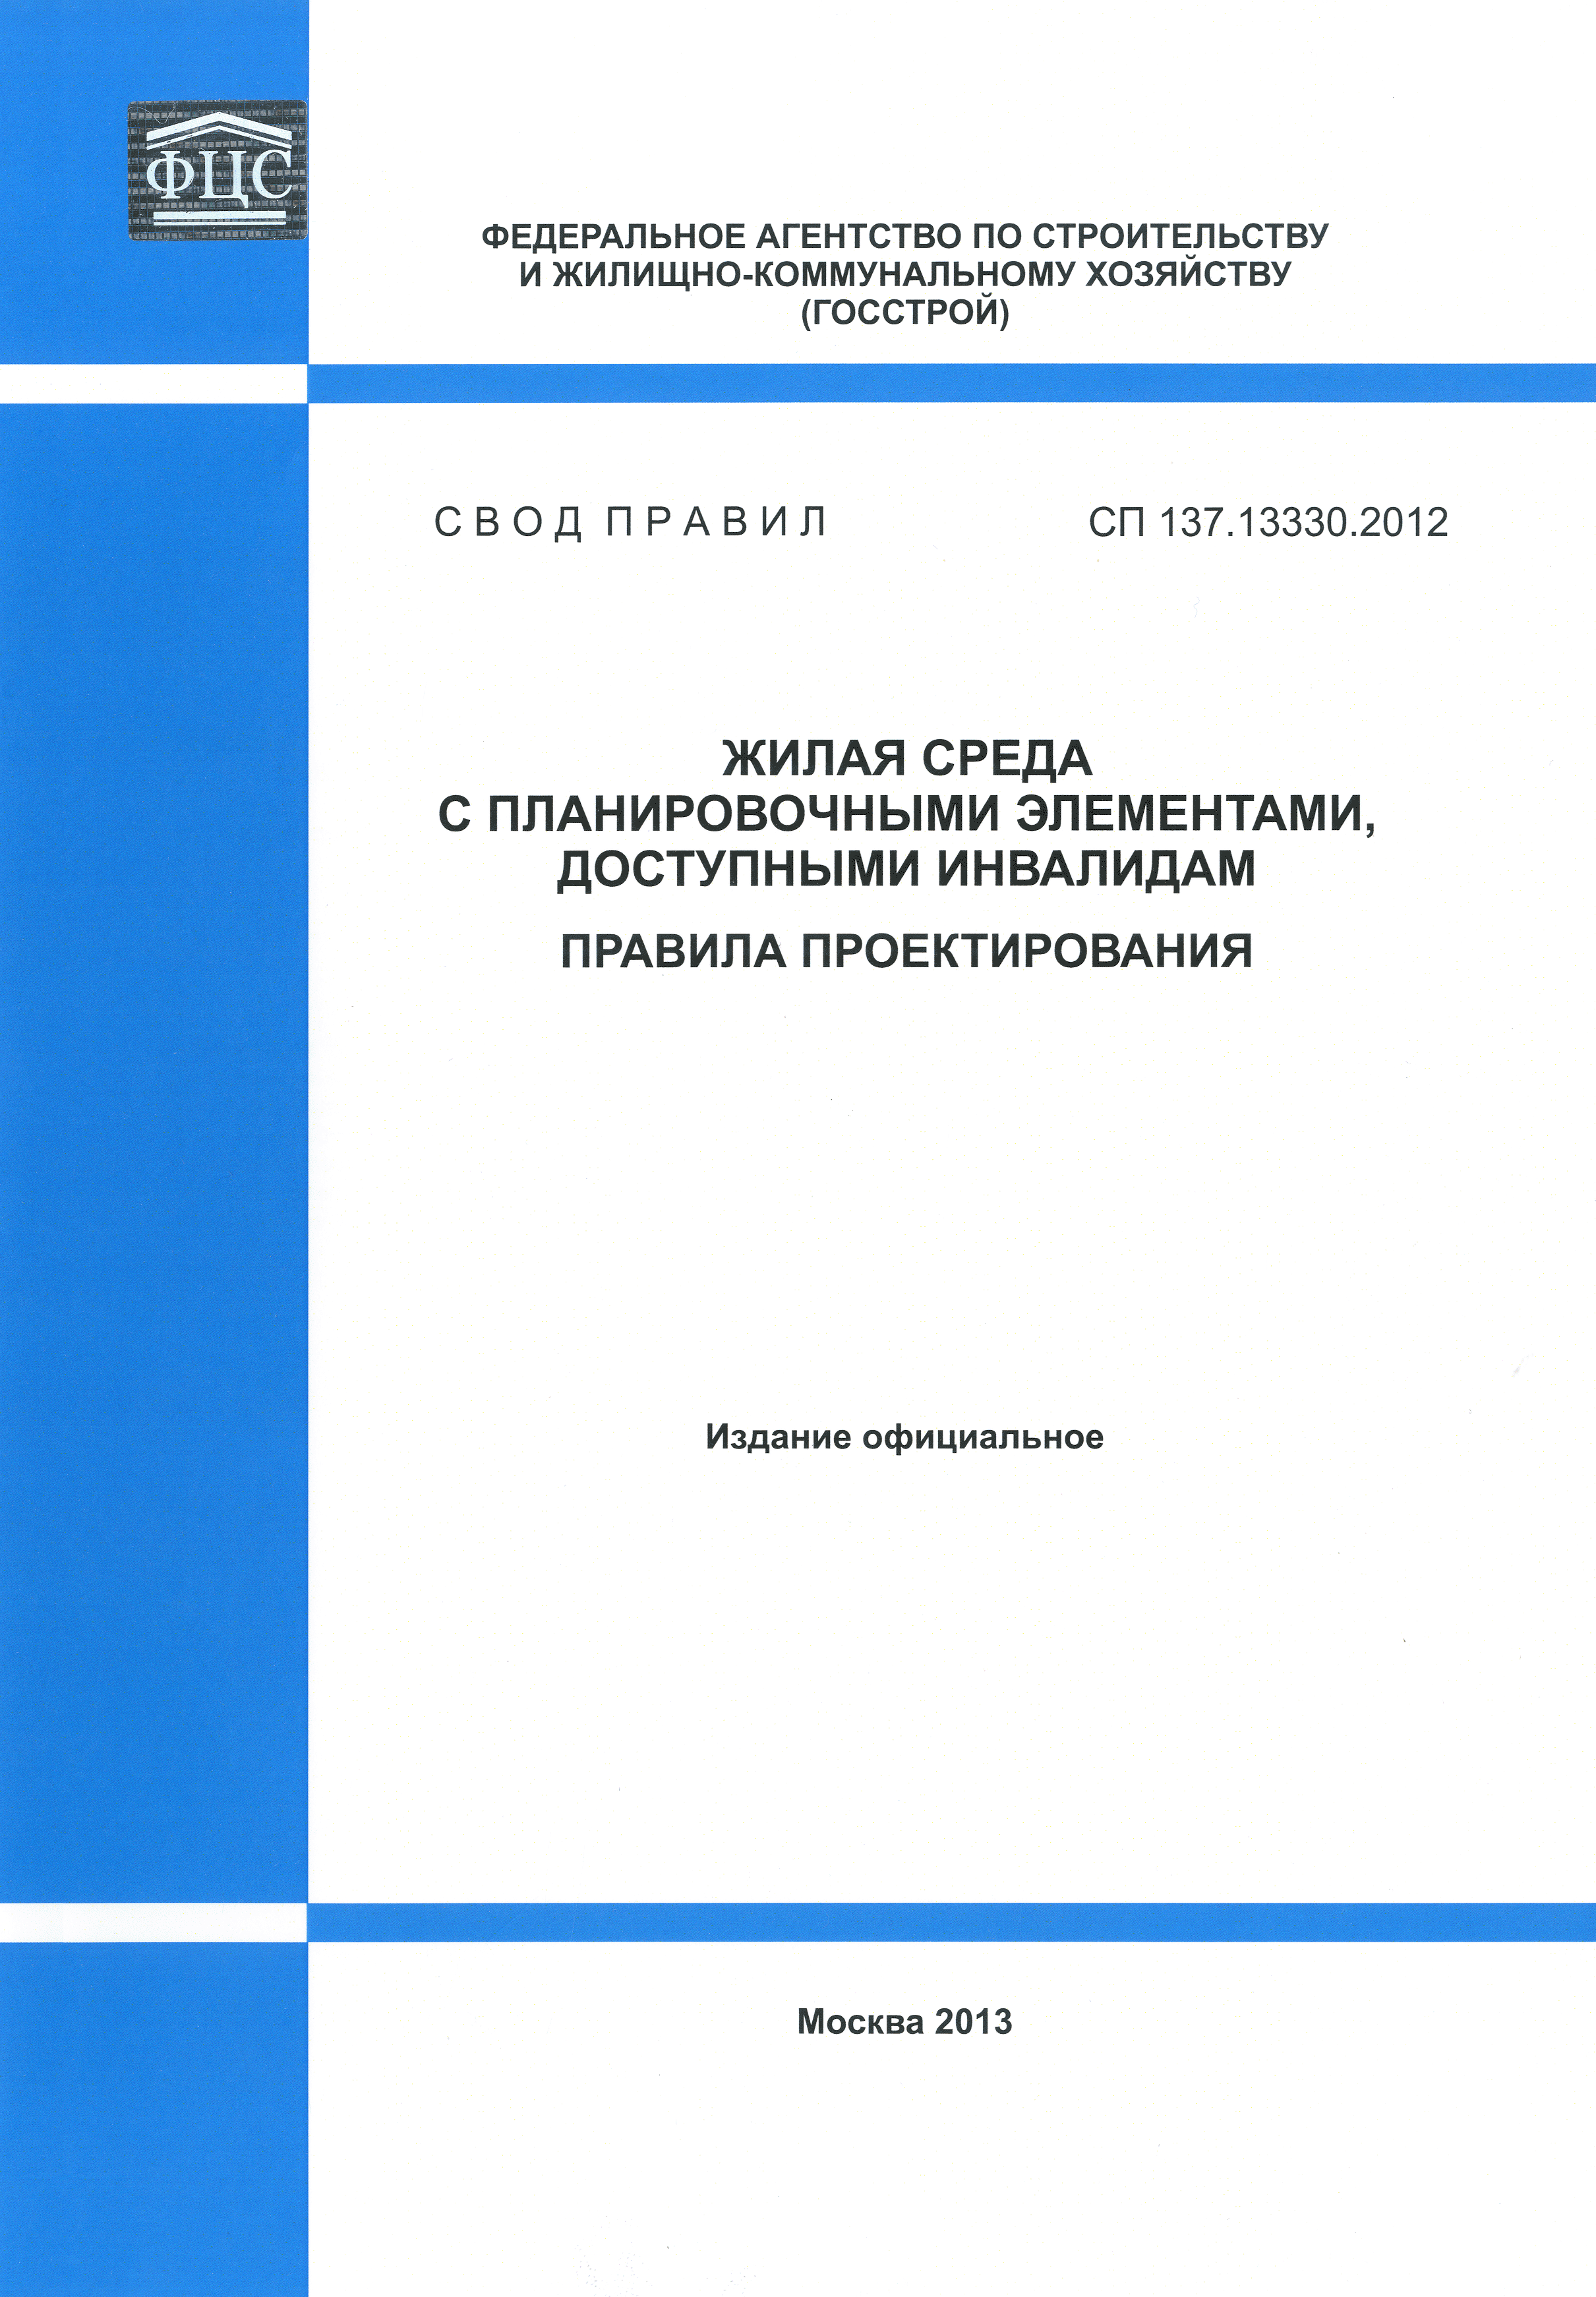 СП 137.13330.2012